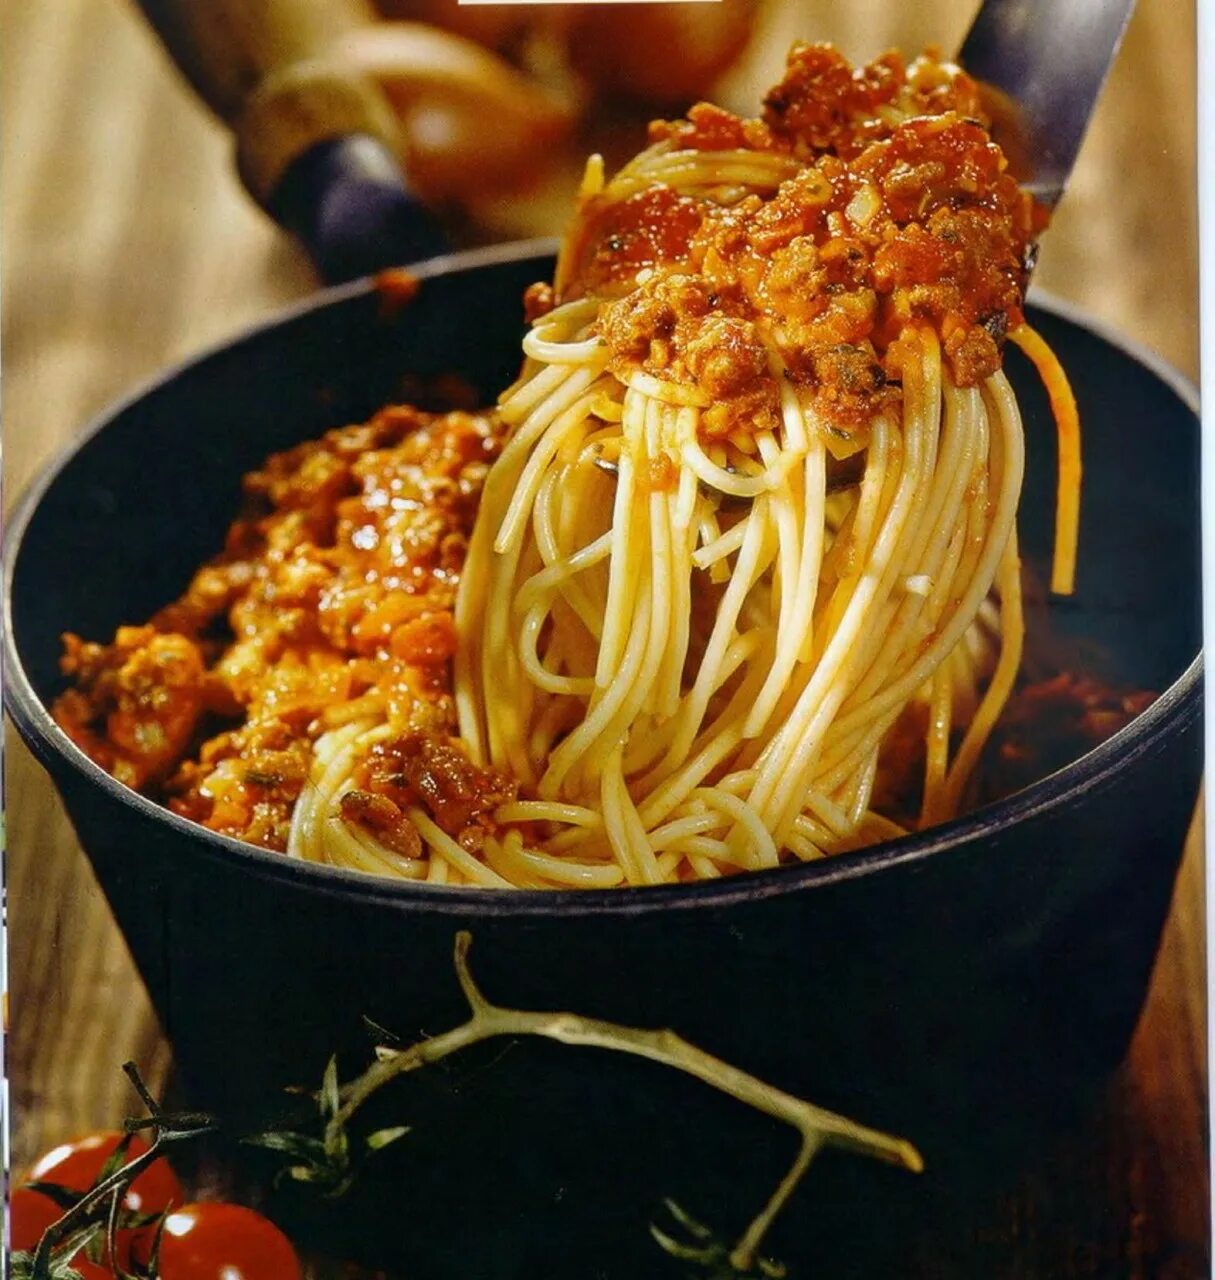 Спагетти с фаршем в соусе болоньезе. Спагетти Полонез. Спагетти баланьез. Болоньезе. Макароны под соусом болоньезе с фаршем.